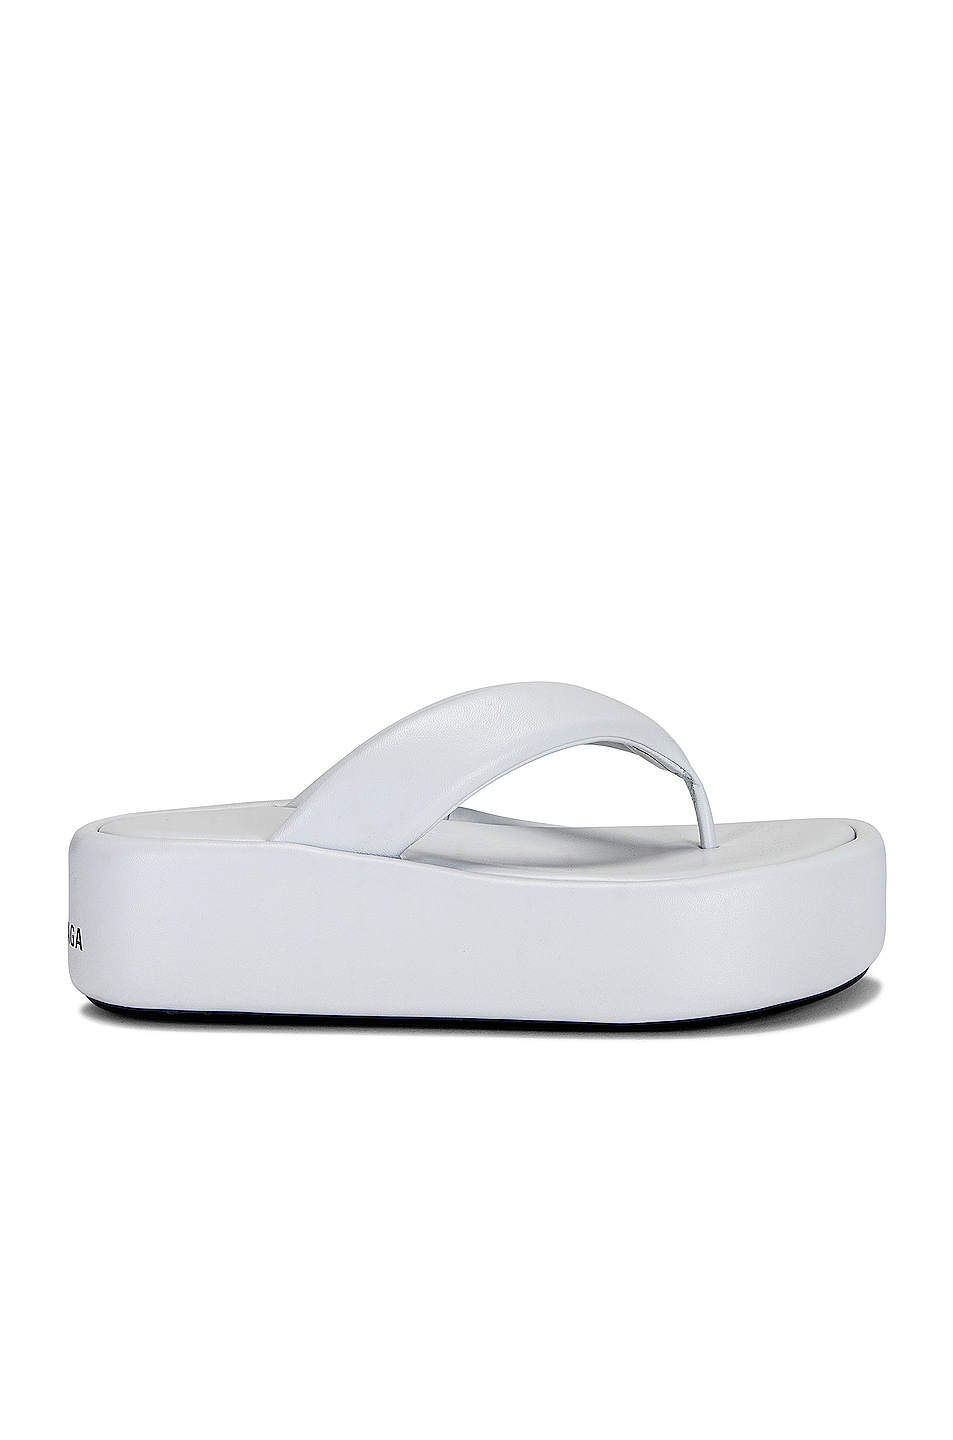 Balenciaga Rise Thong Sandals in White & Black | FWRD